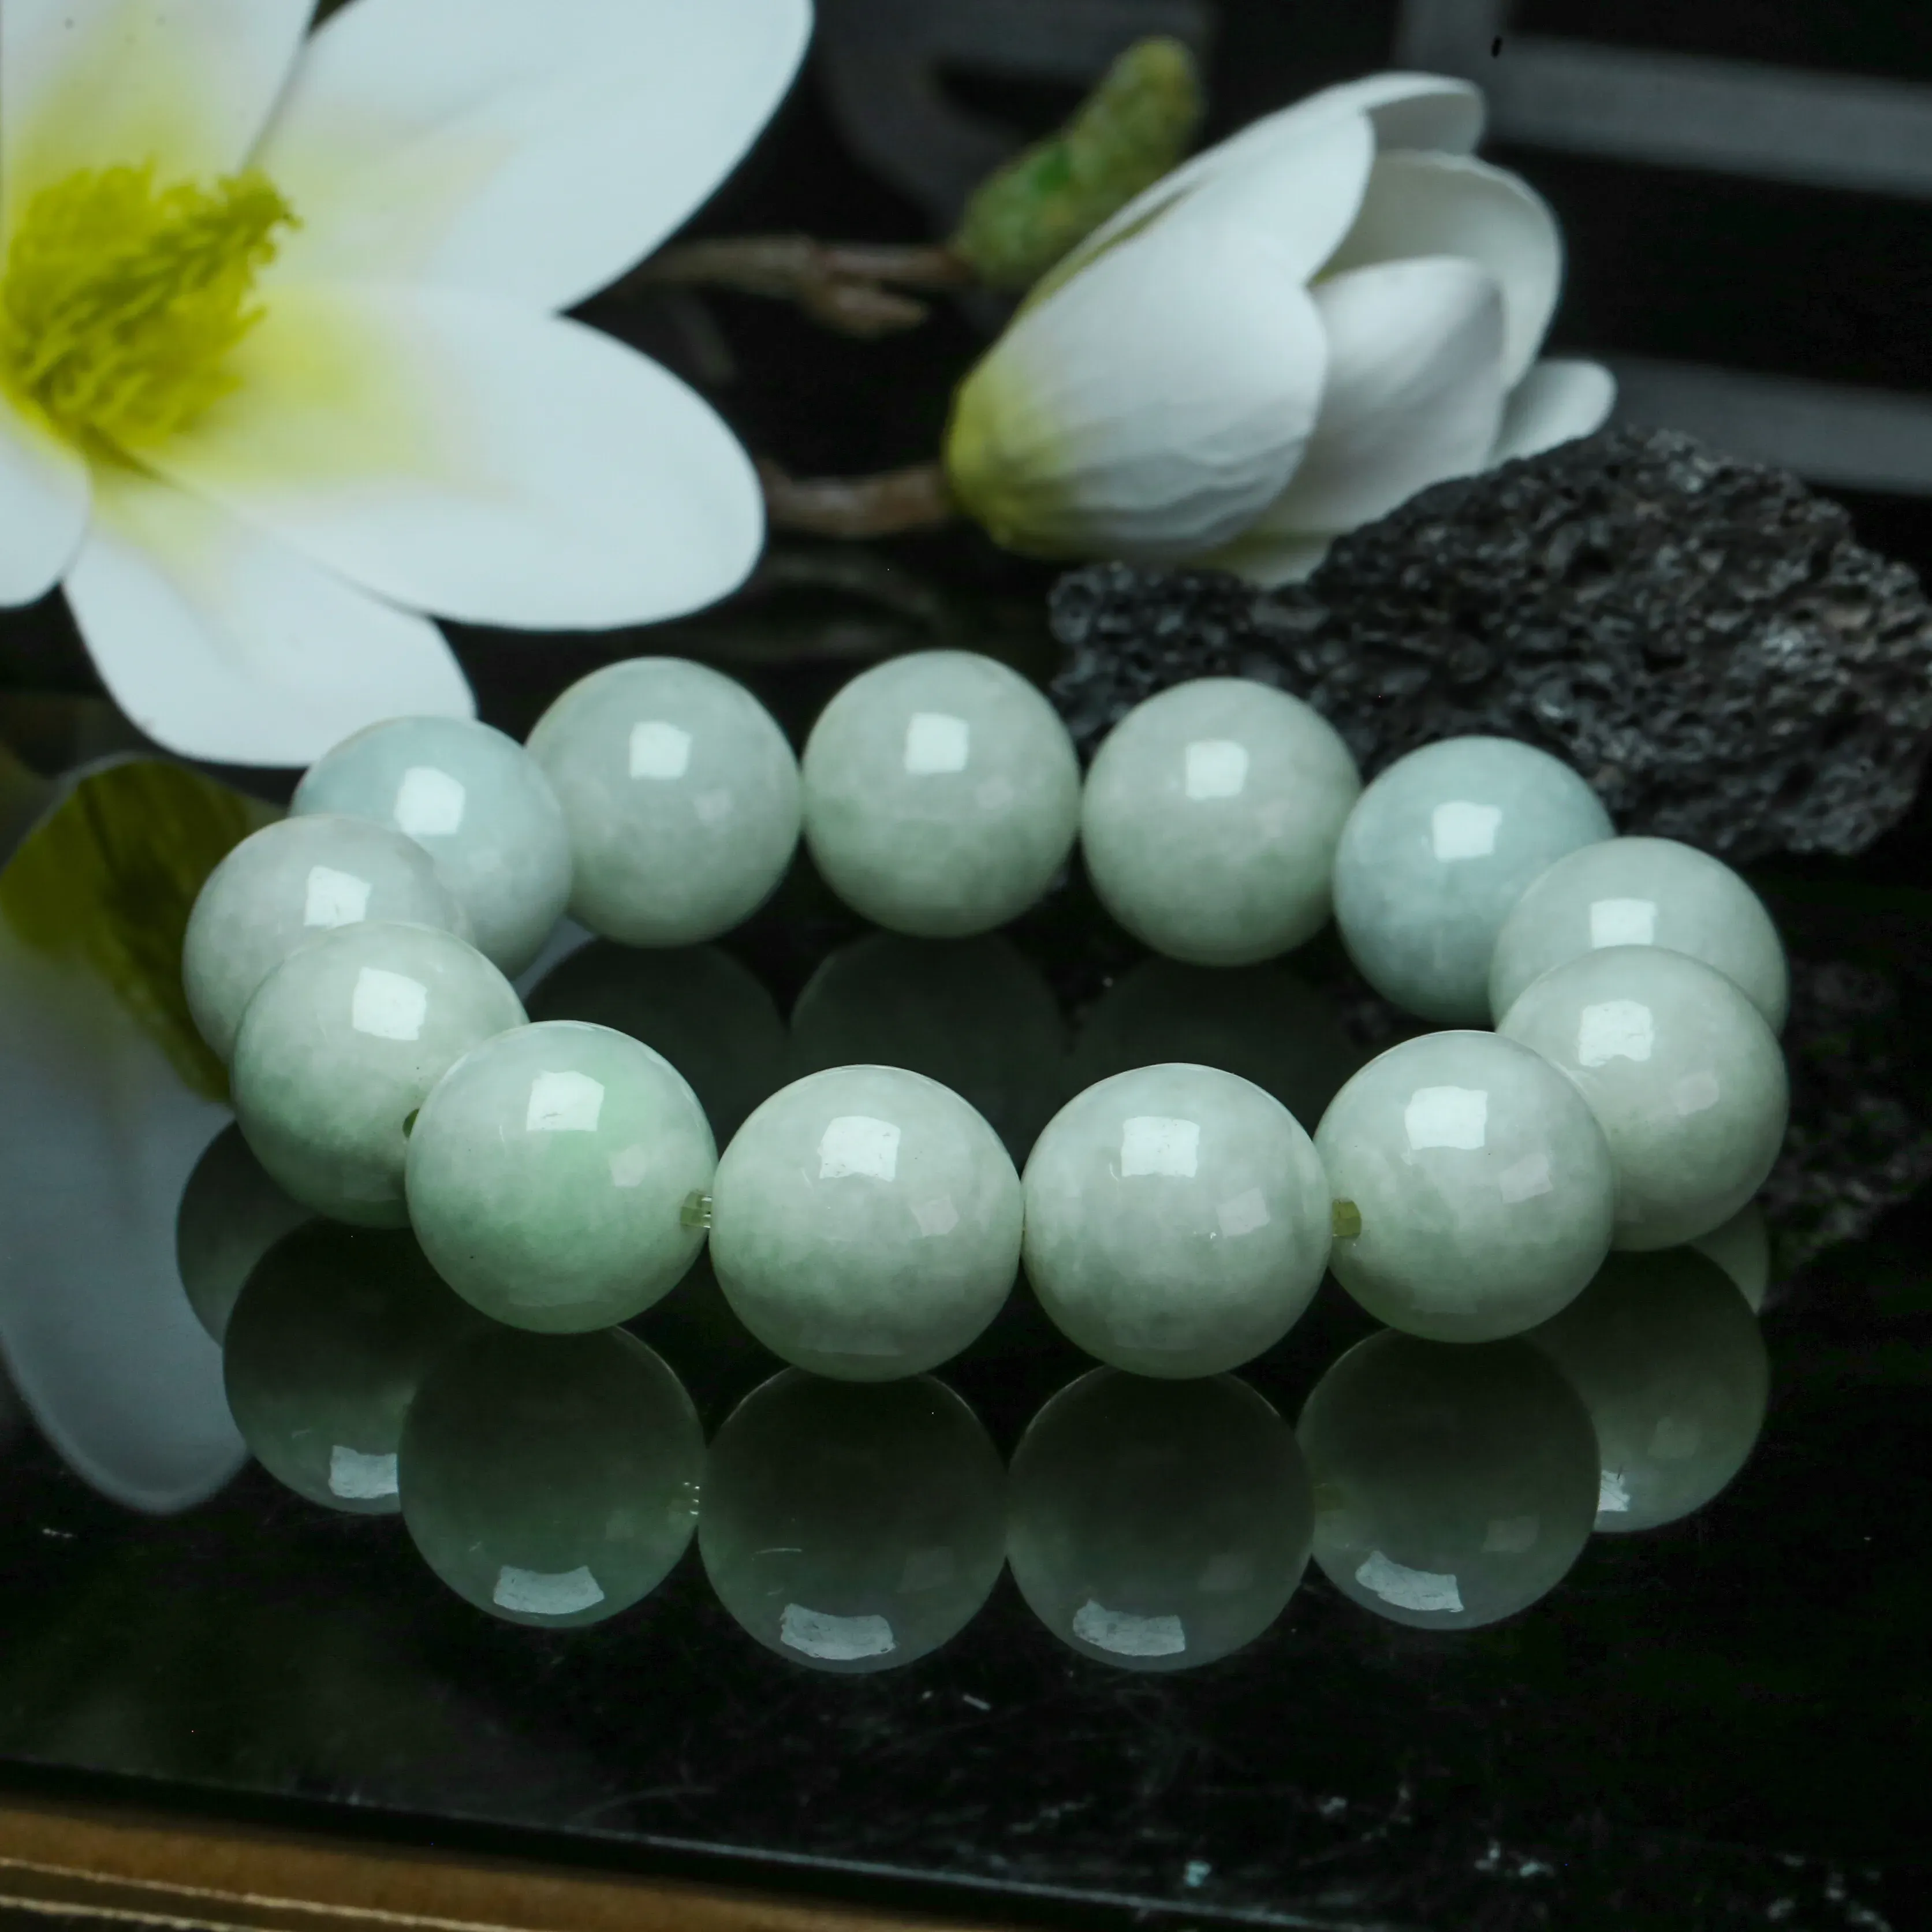 翡翠圆珠手串，共13颗珠子，取其中一颗珠尺寸大约16.8mm，饱满圆润，色泽清爽。上手佩戴高贵漂亮